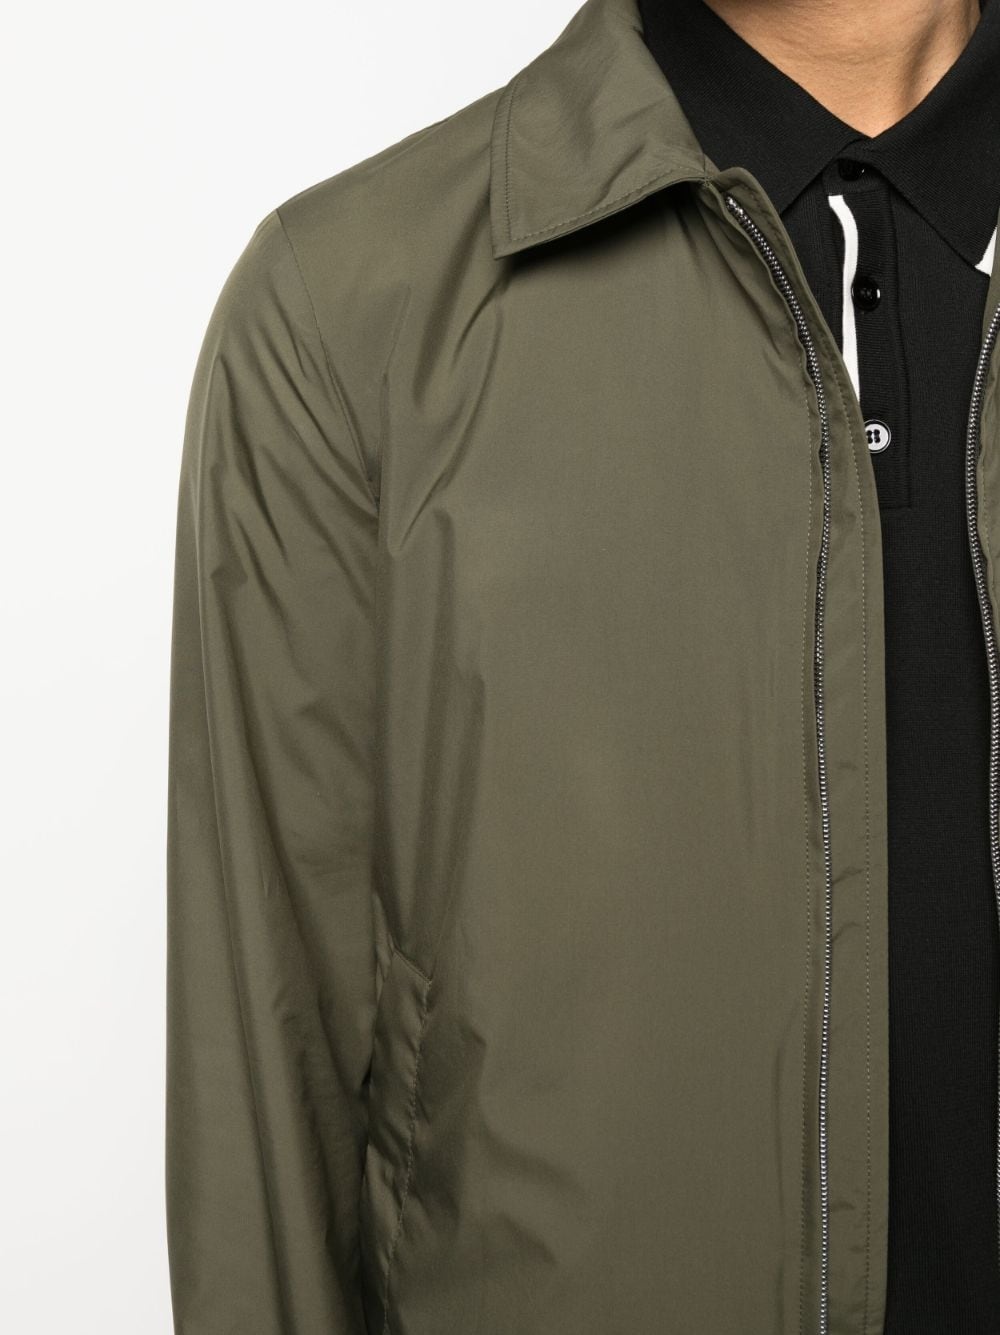 plain lightweight jacket - 5